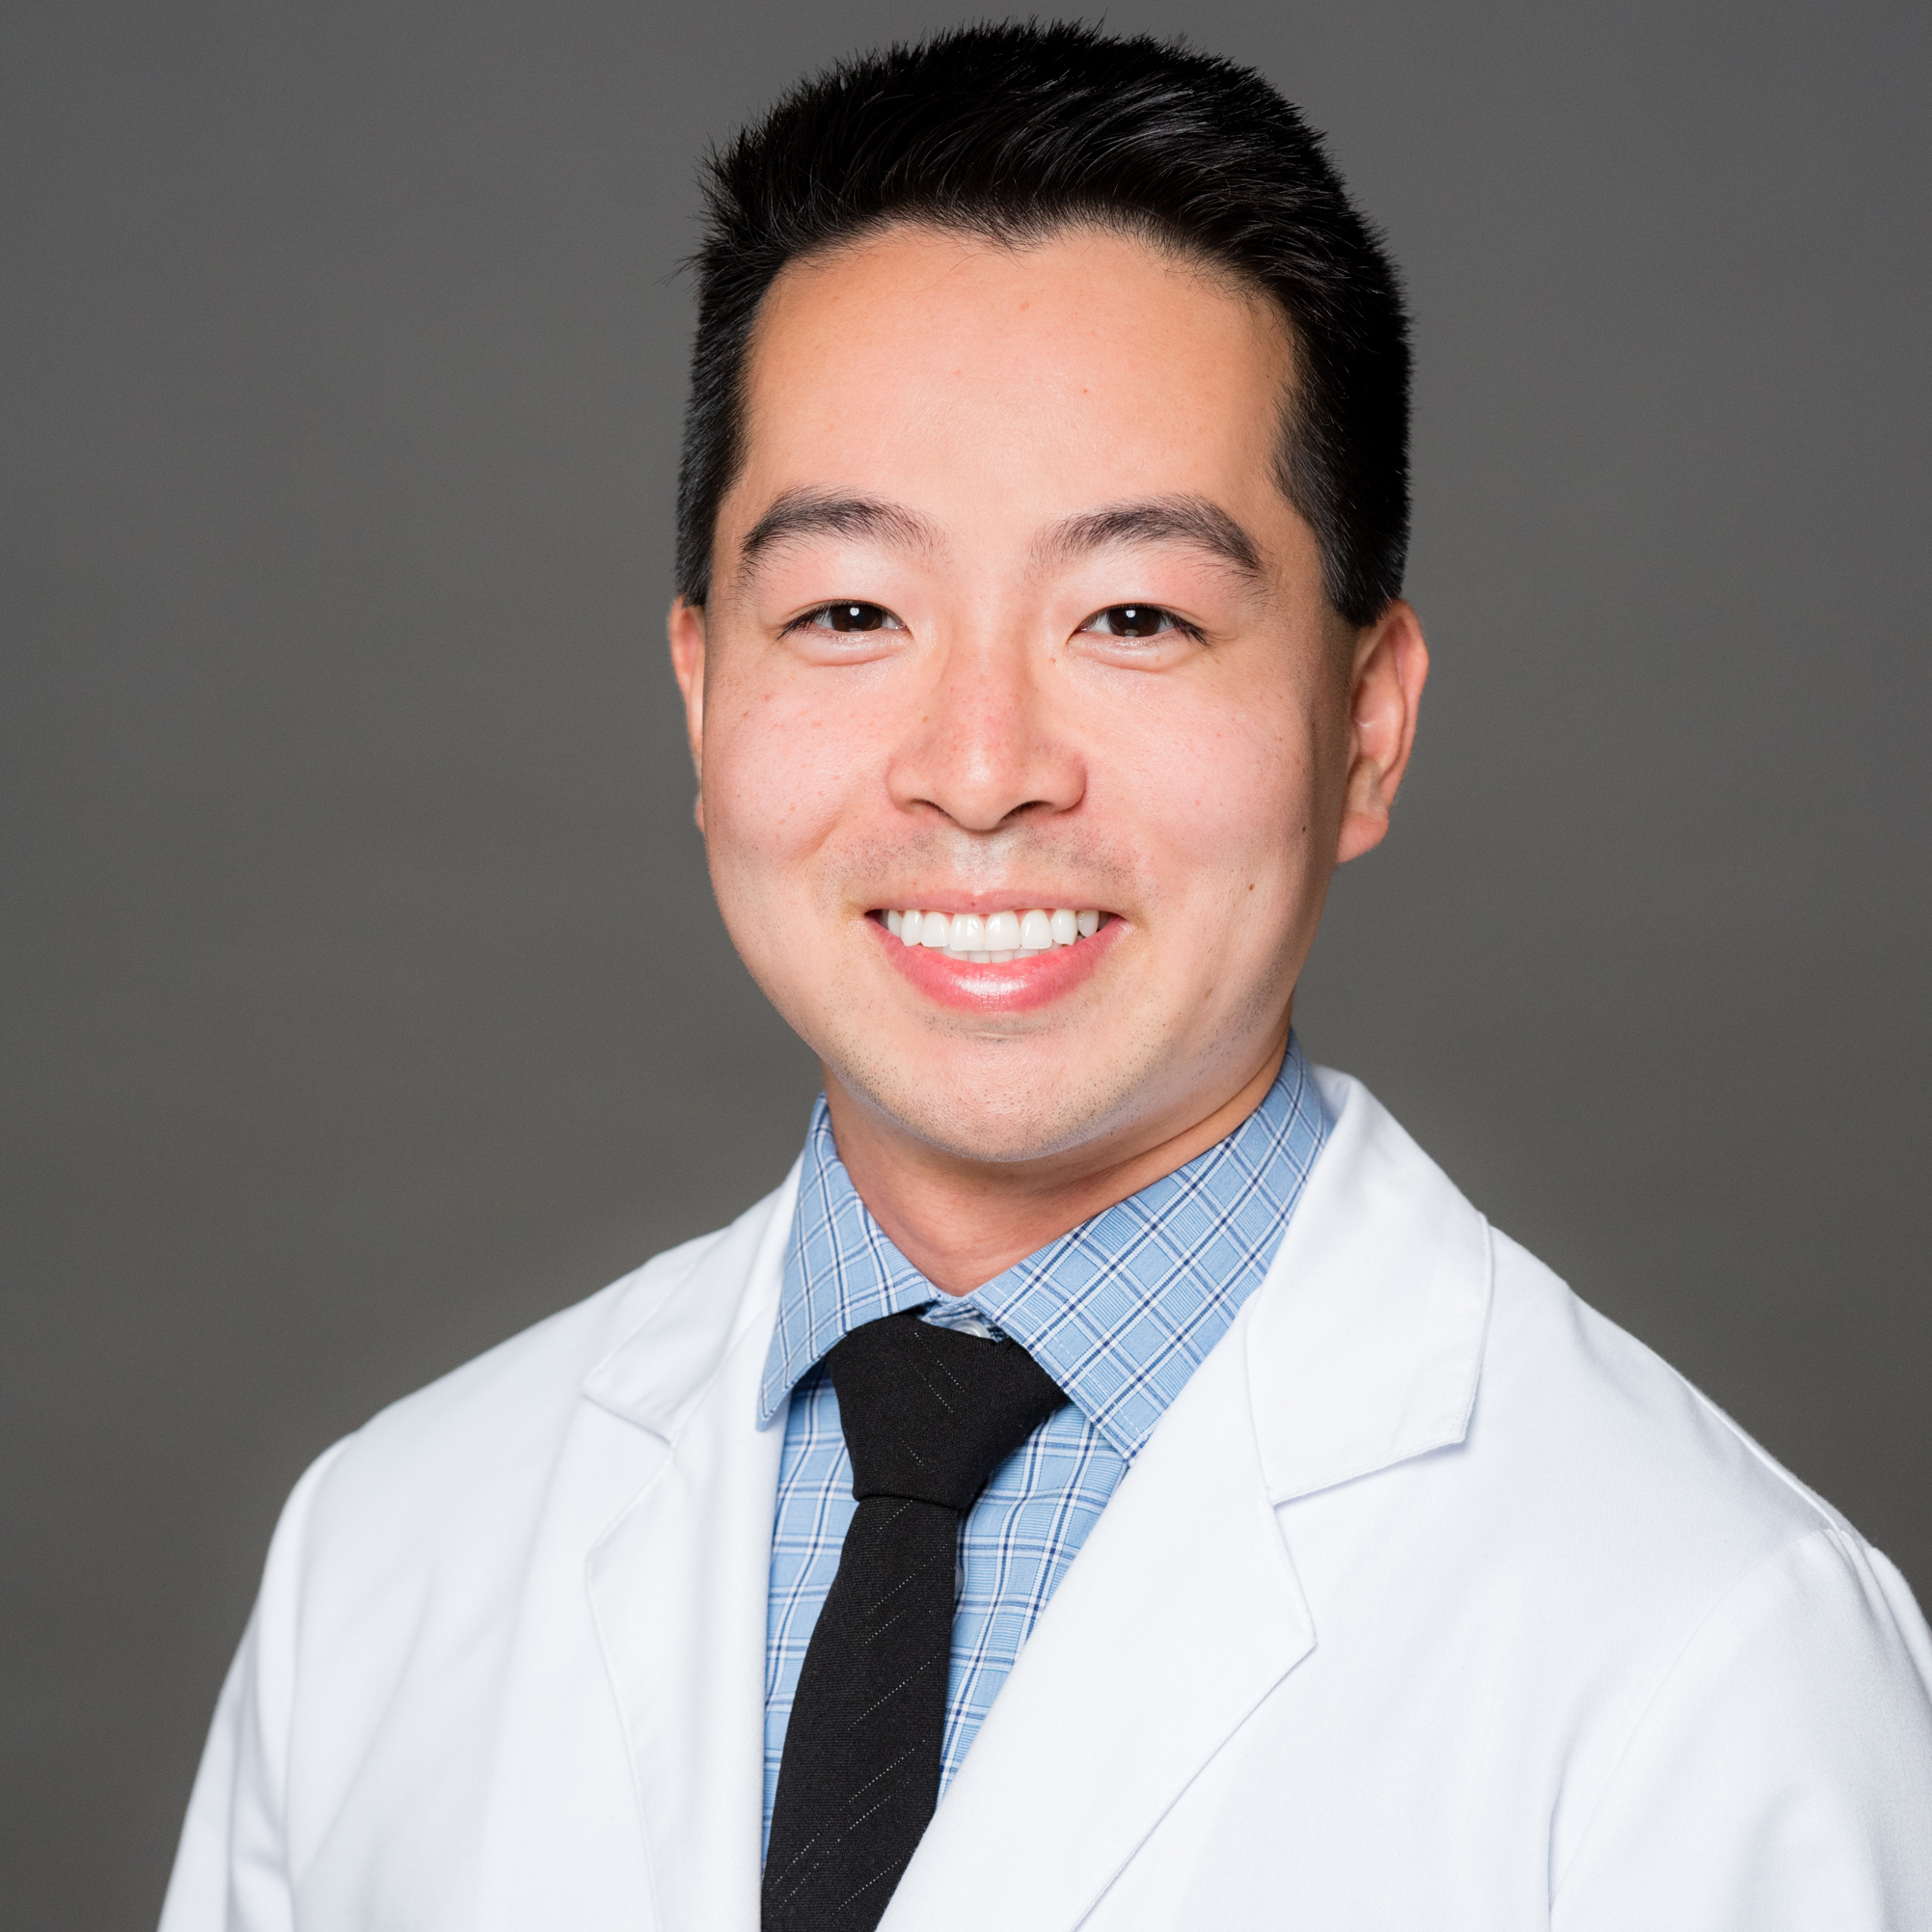 Dr. Chris Park